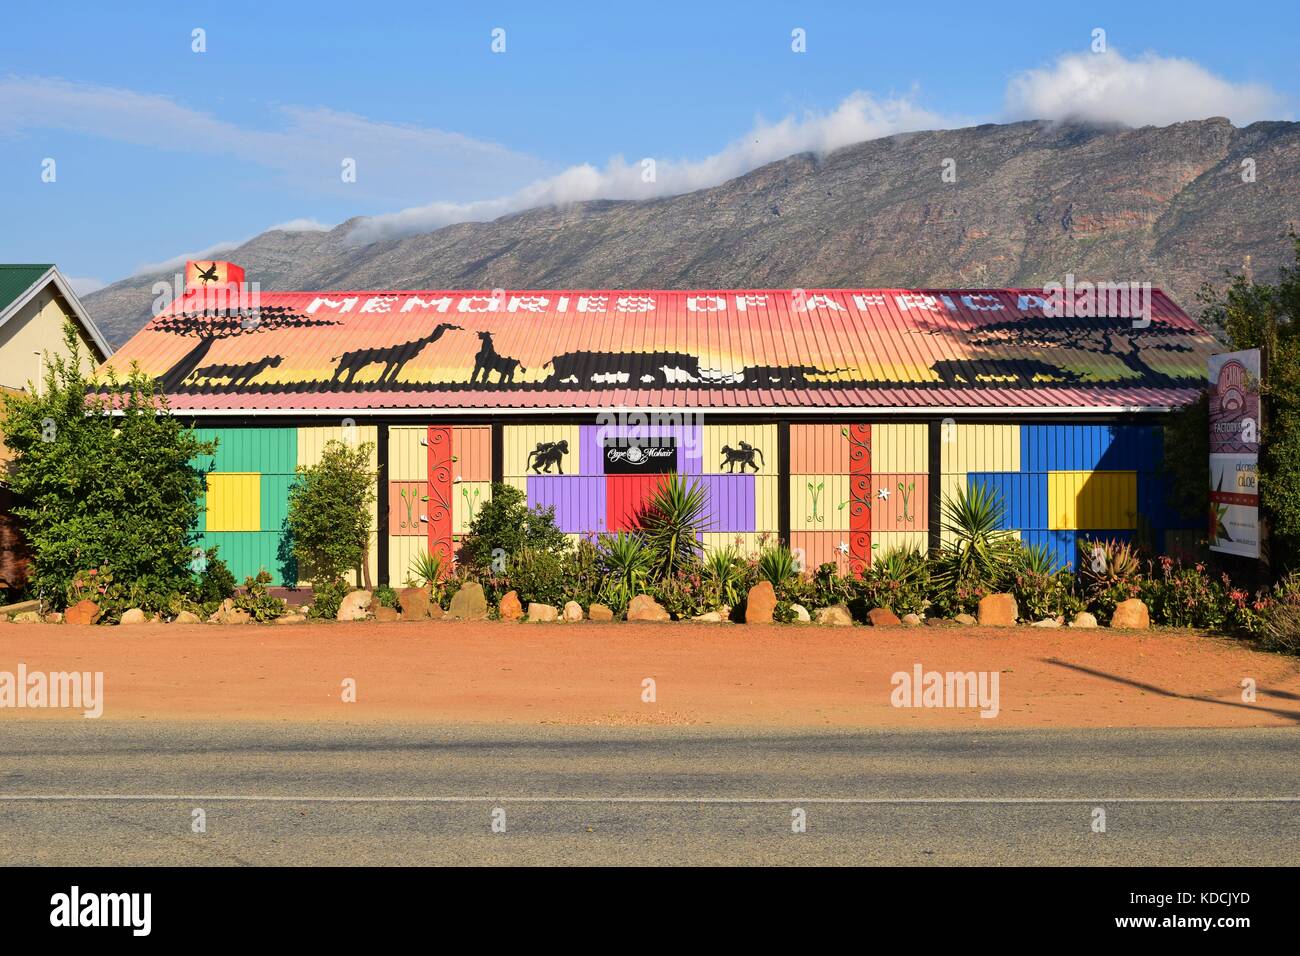 Colorida tienda decorada con la fauna africana silueta, situado en la montañosa región de Overberg y Klein Karoo, Barrydale, Garden Route de Sudáfrica Foto de stock